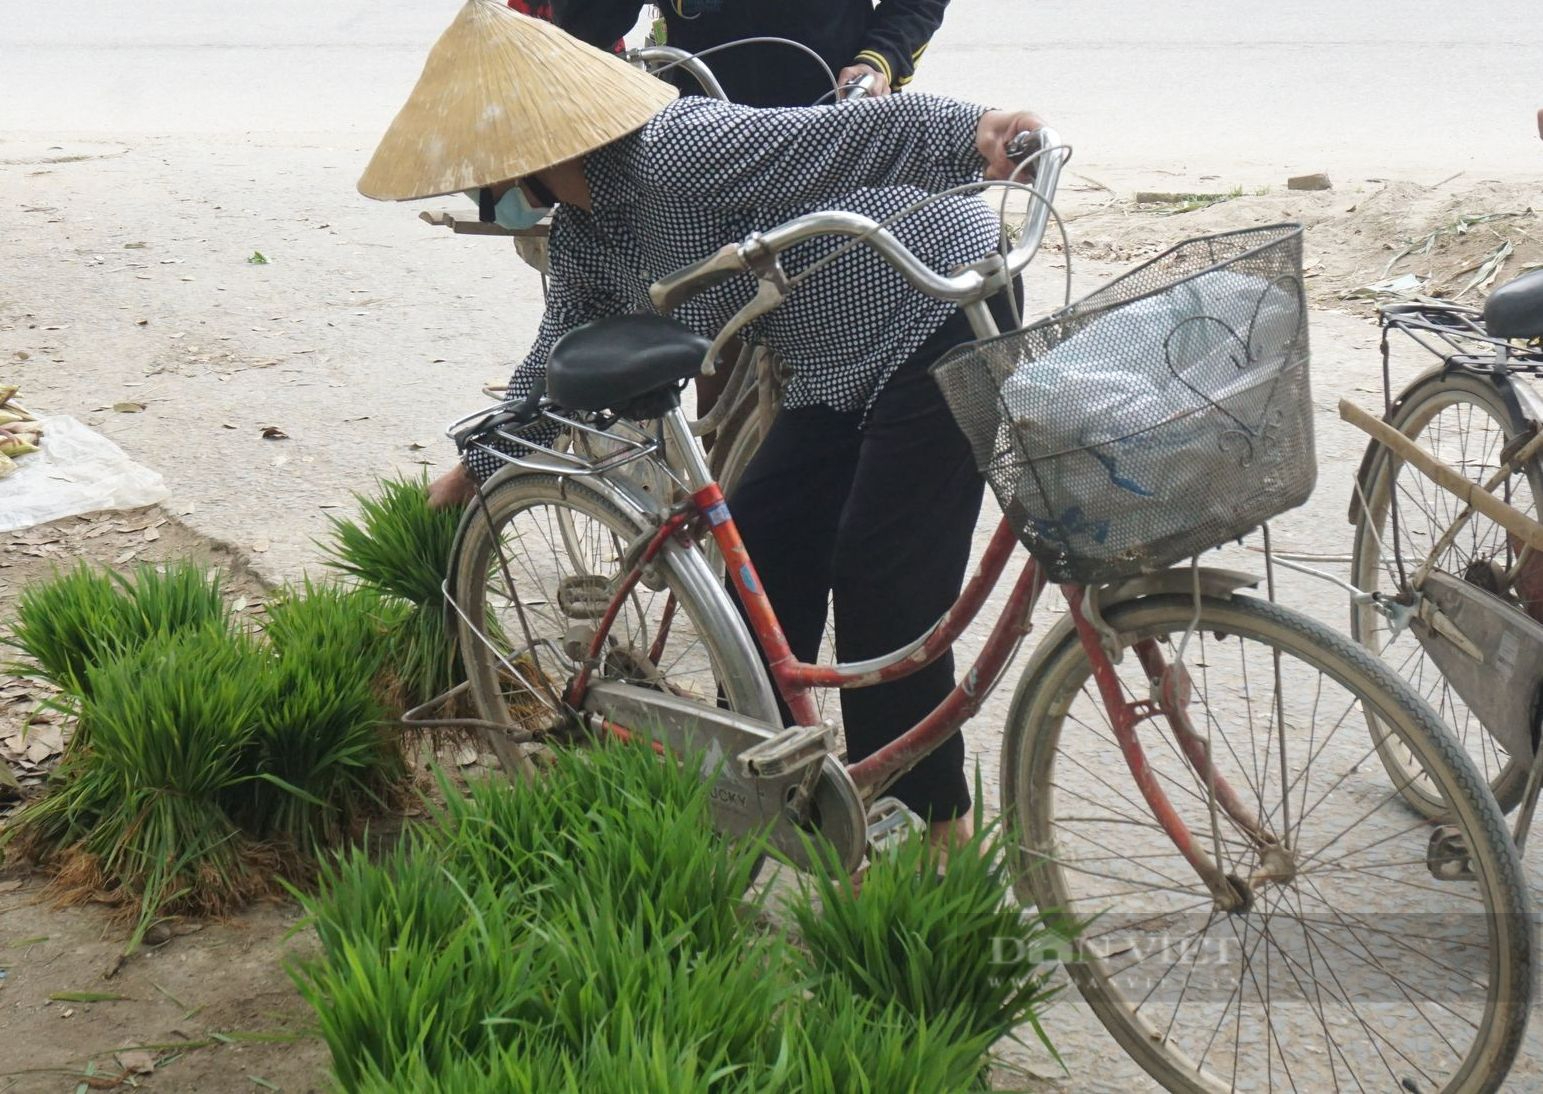 Nghệ An: Phiên chợ đặc biệt của những người nông dân, tỉa lúa non đi bán kiếm tiền đong chợ hàng ngày   - Ảnh 2.